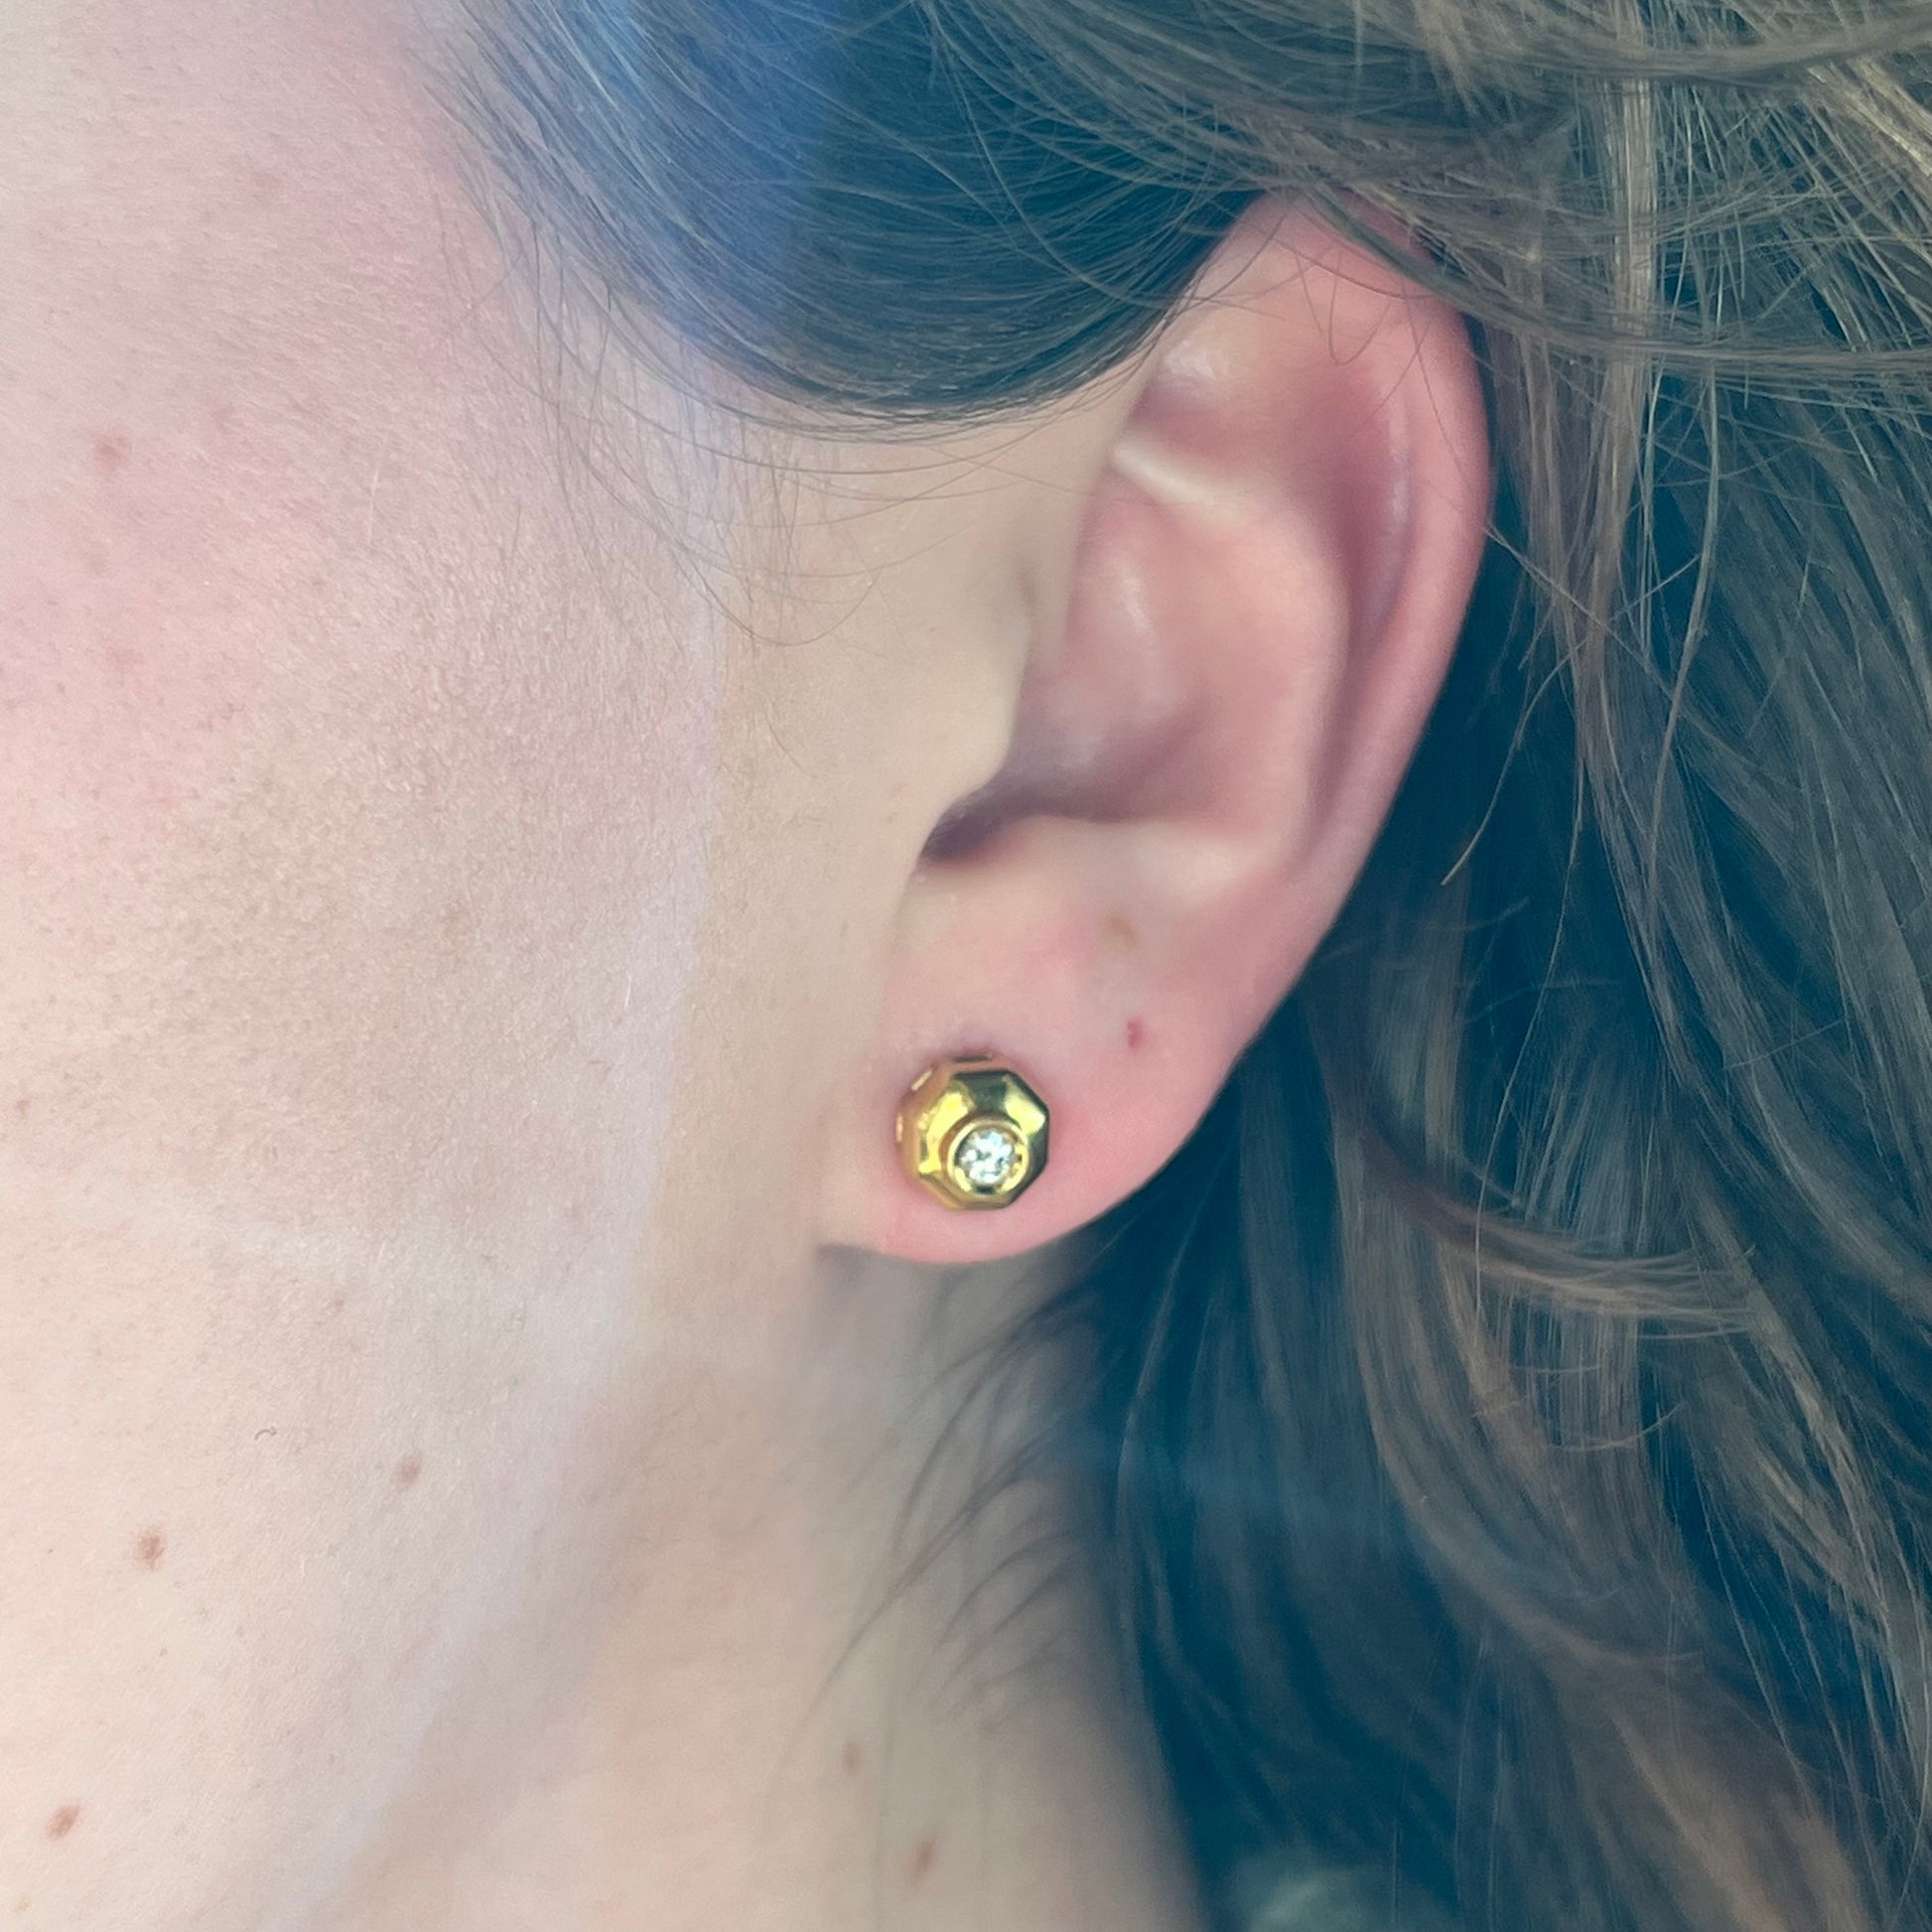 Geometric Bezel Set Diamond Stud Earrings in 18k Yellow Gold